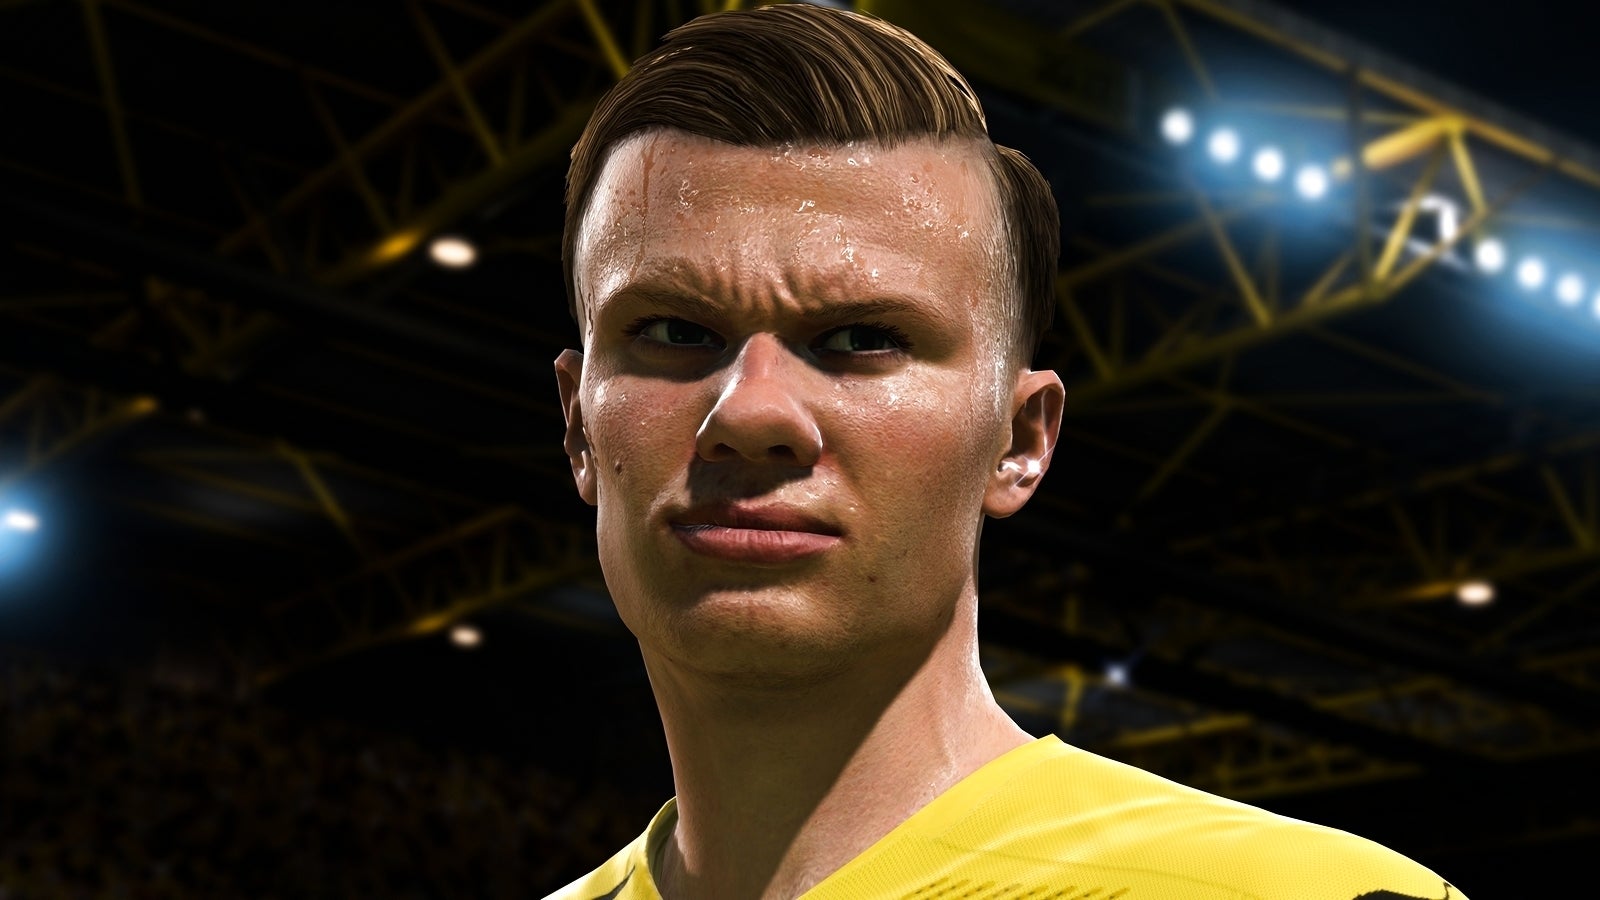 Bilder zu FIFA 21: Die besten Bundesliga-Spieler sind eine weitestgehend eintönige Sache